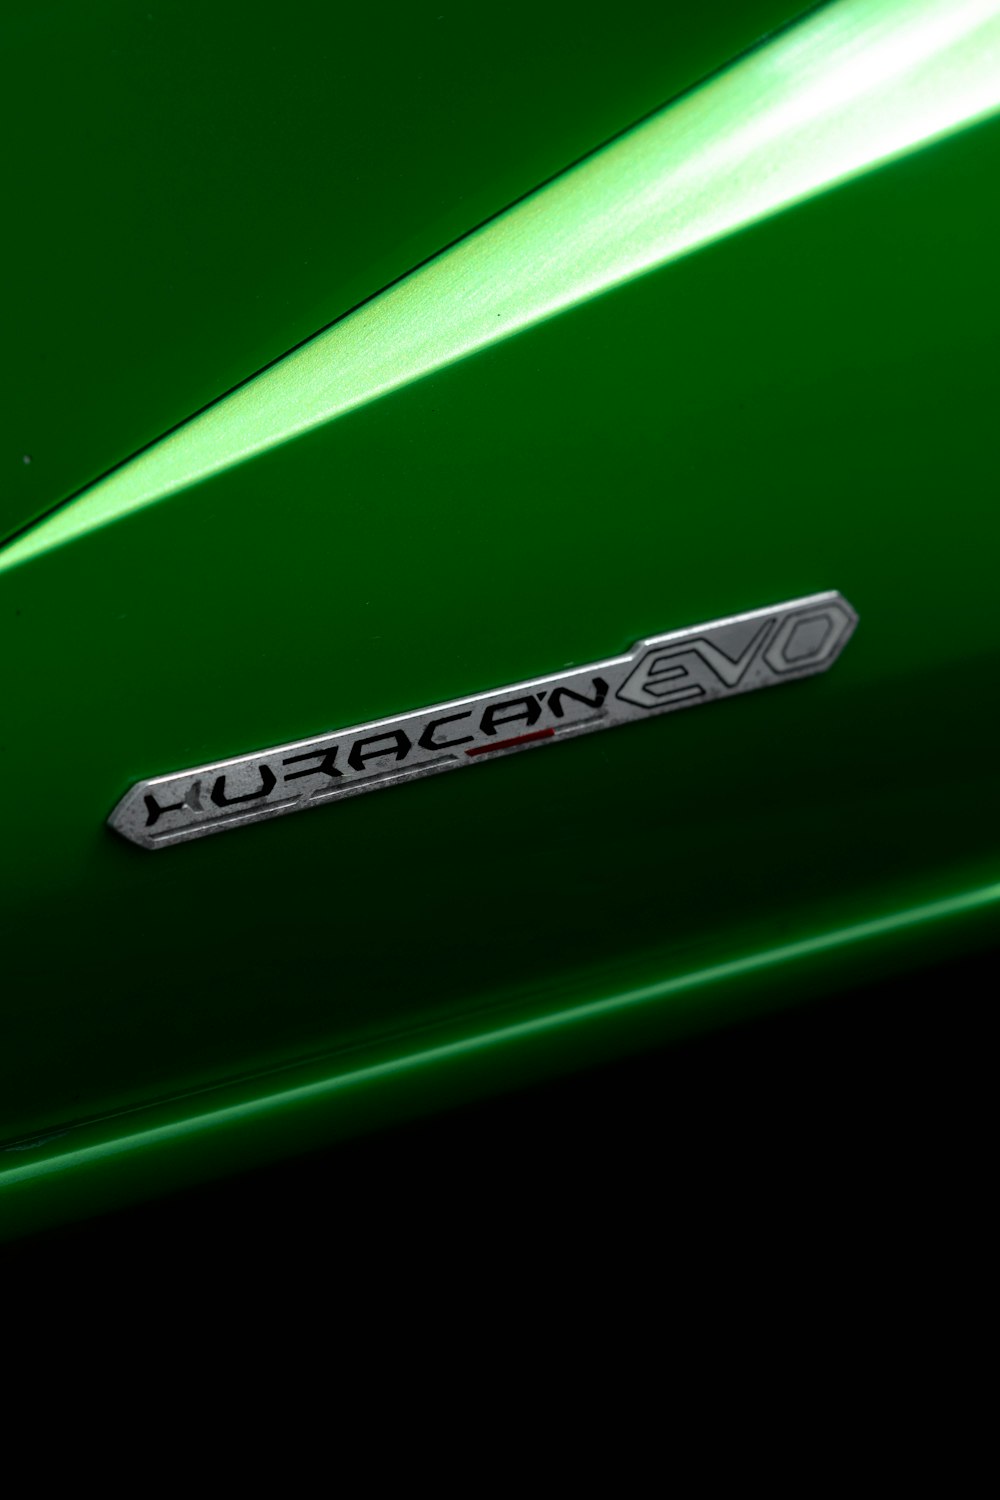 Nahaufnahme des Emblems auf einem grünen Sportwagen